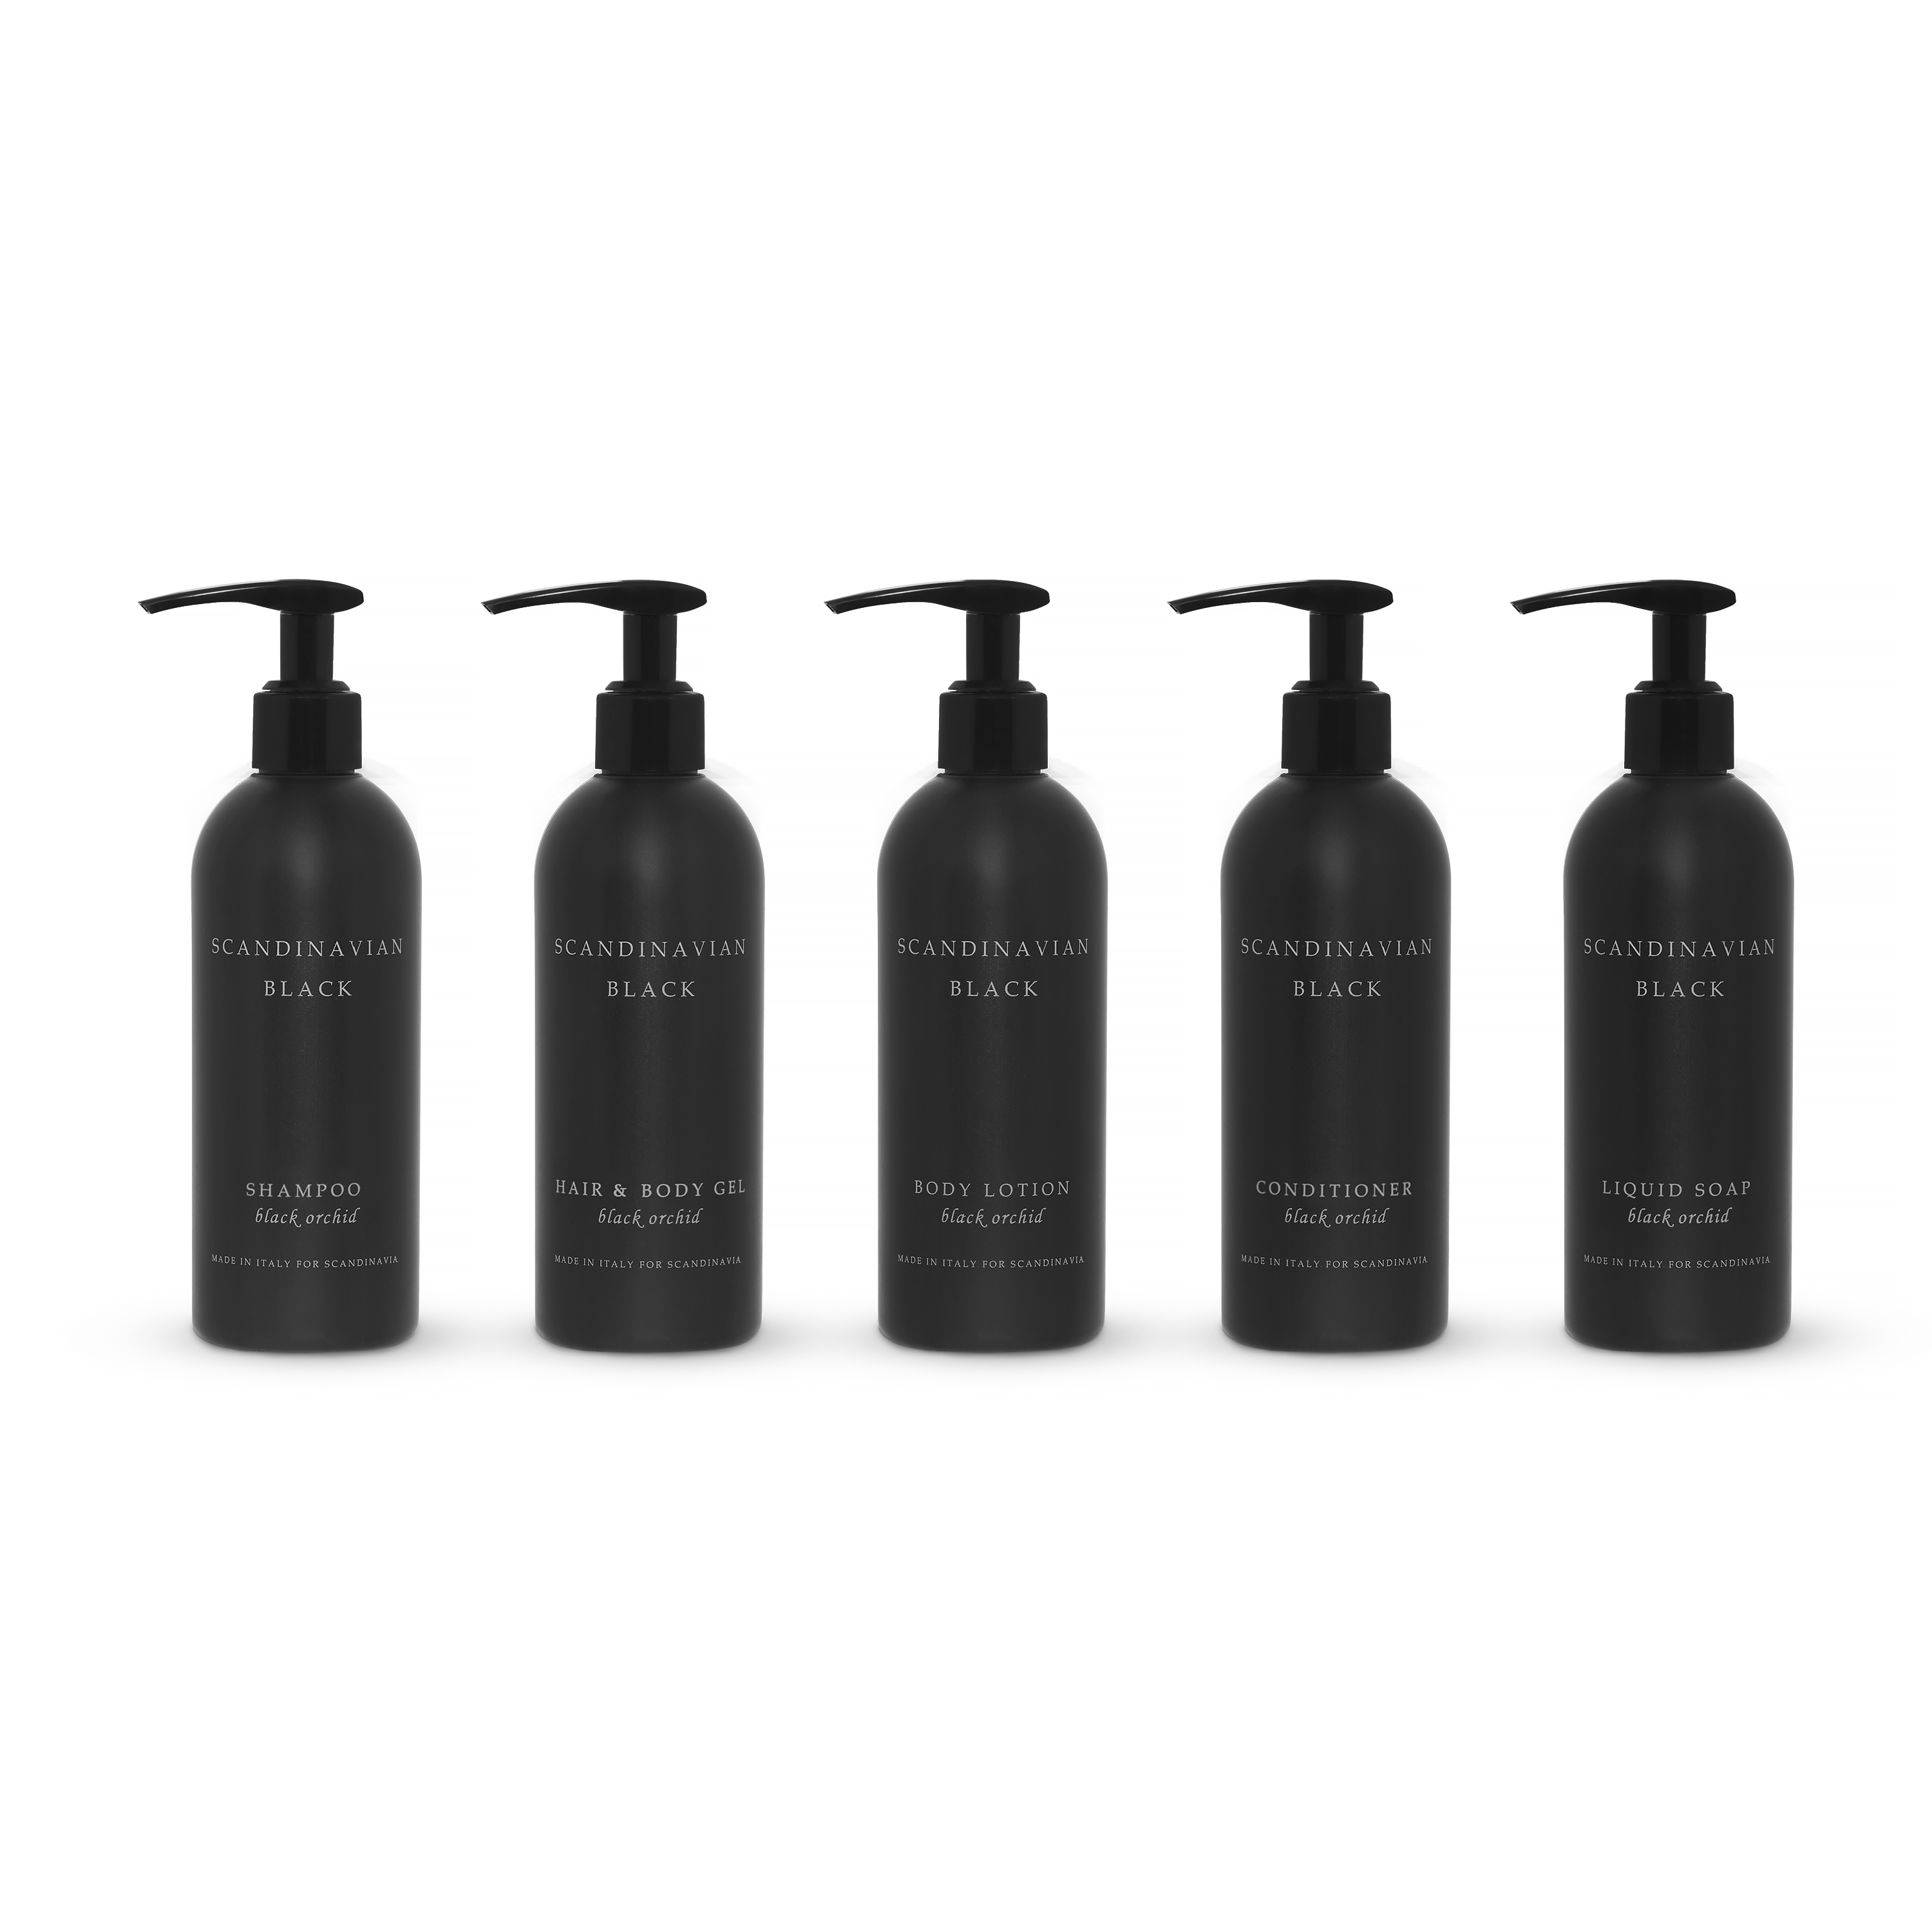 Shampoo Scandinavian Black 300 ml